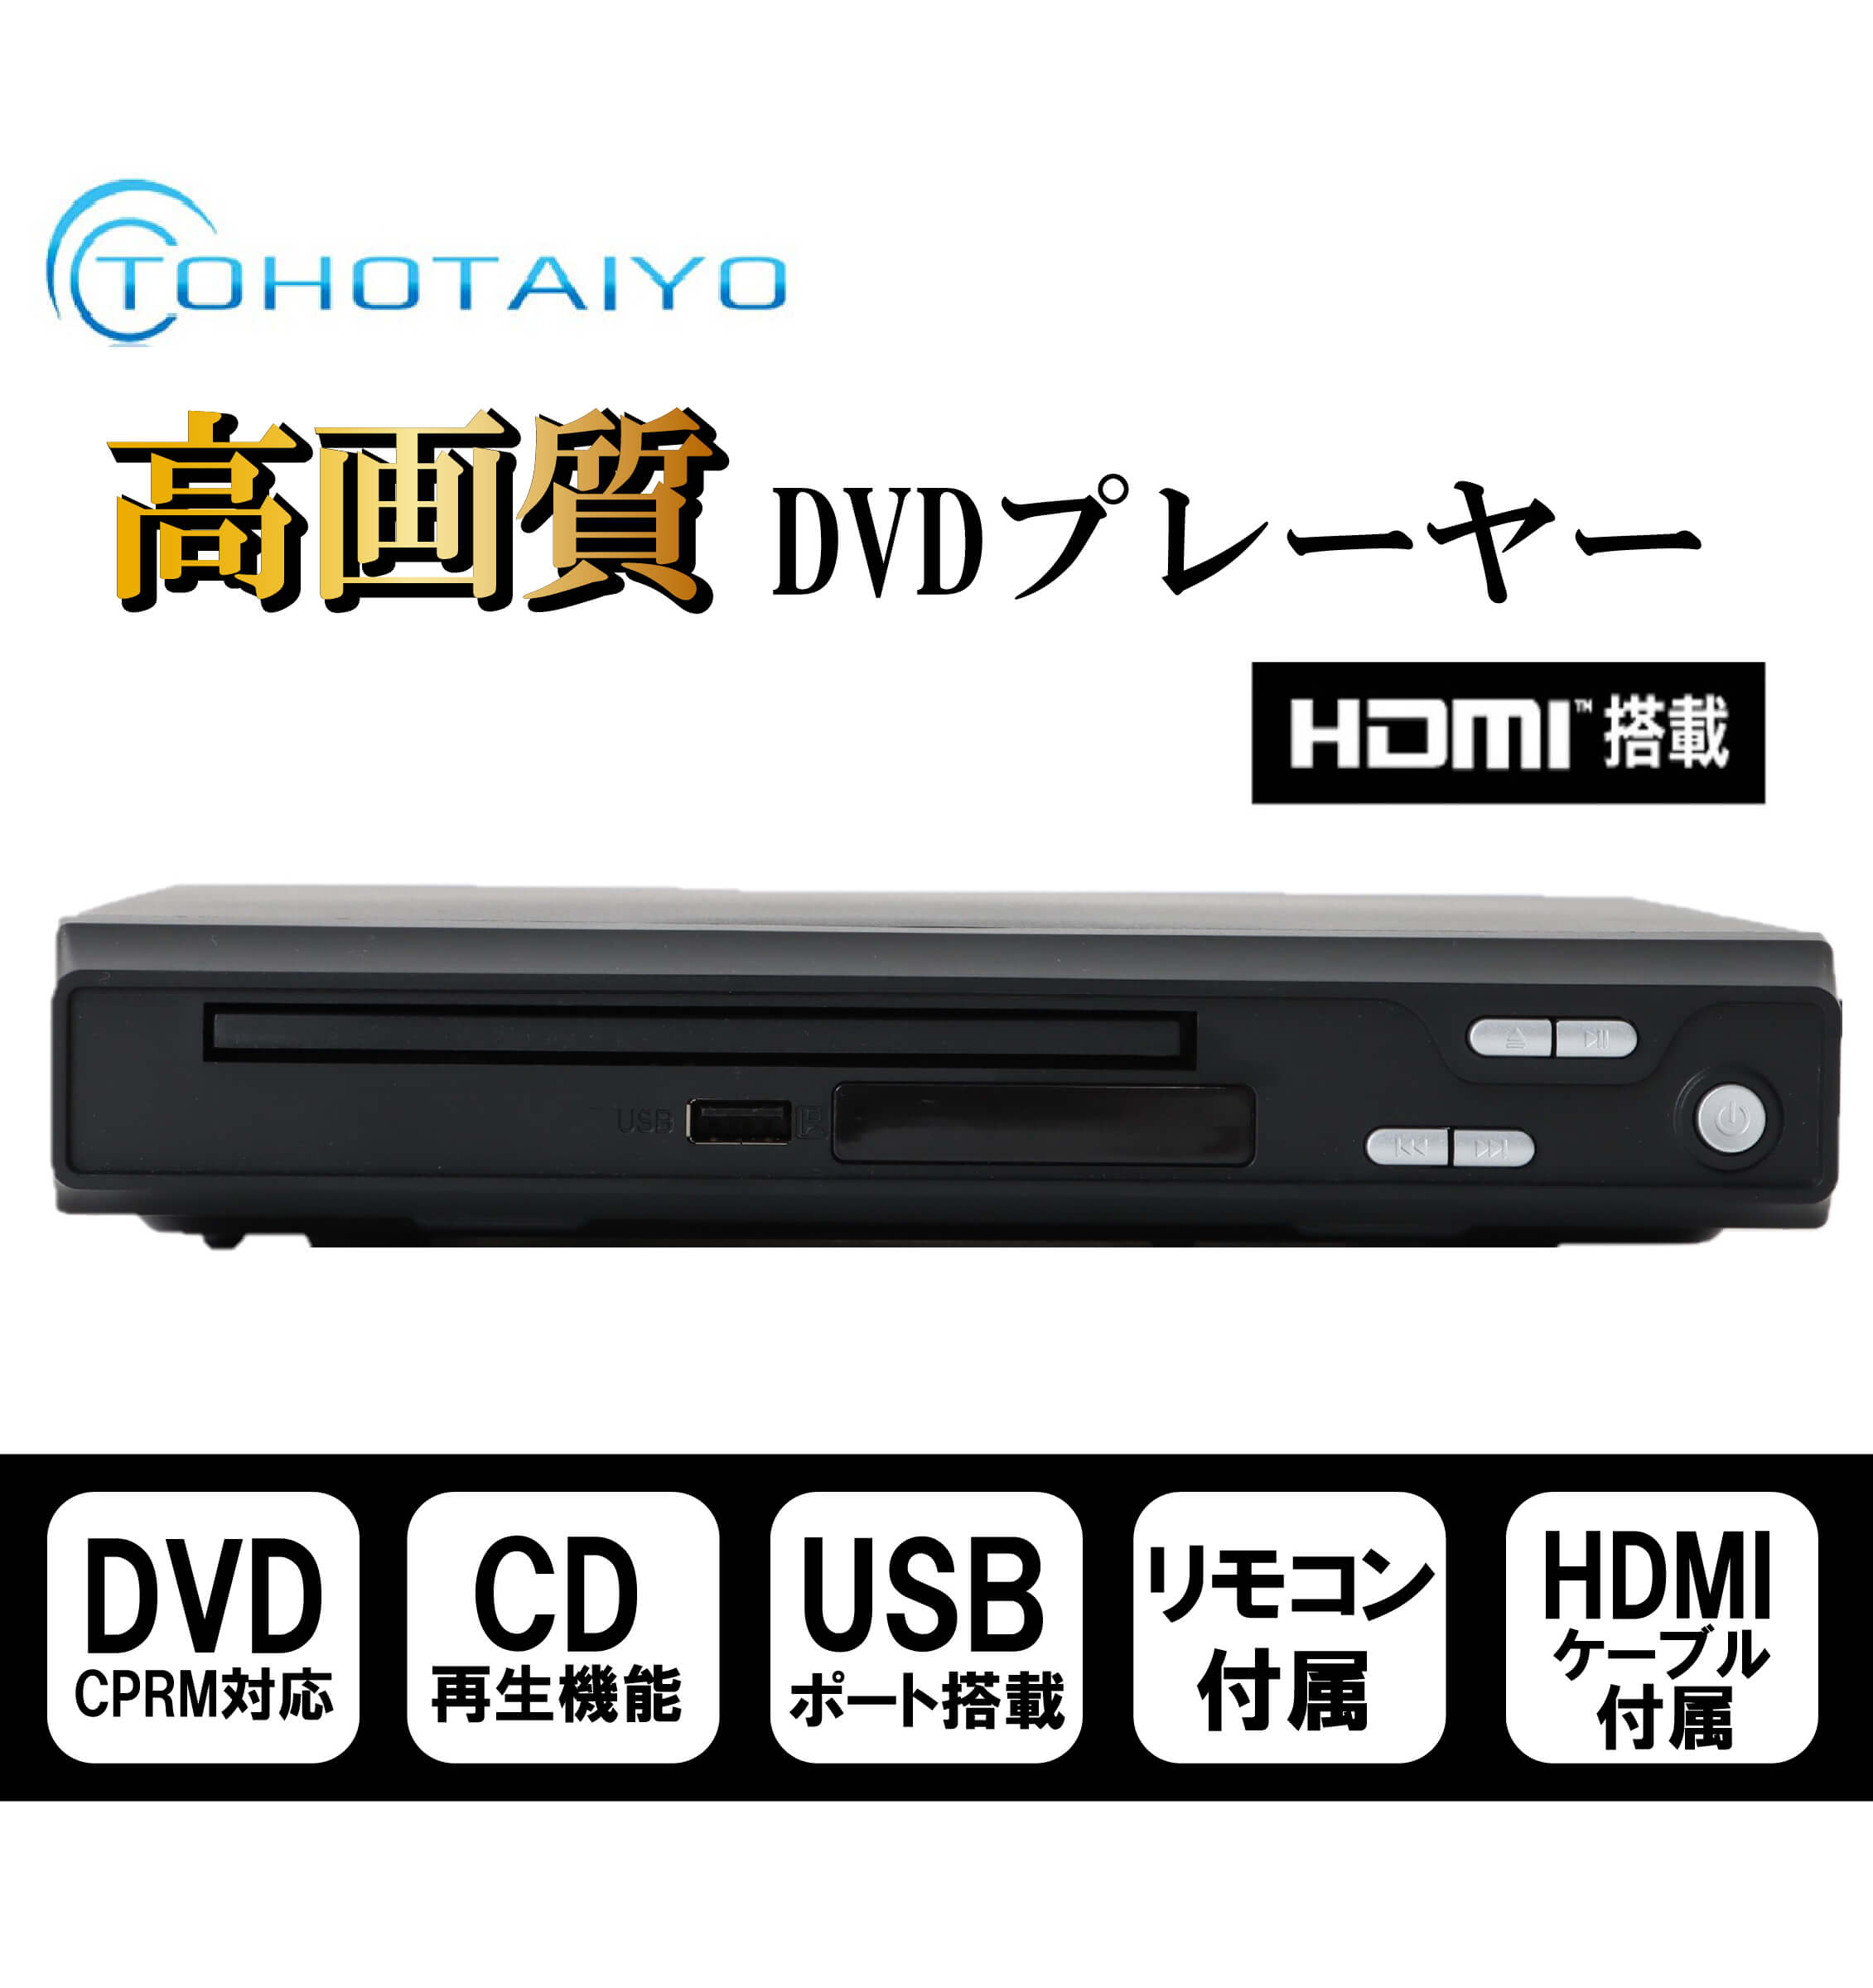 送料無料新品 Reiz レイズ 高画質 HDMI端子搭載 DVDプレーヤー RV-SH200 1台 国内メーカー直販で安心購入 1年保証 